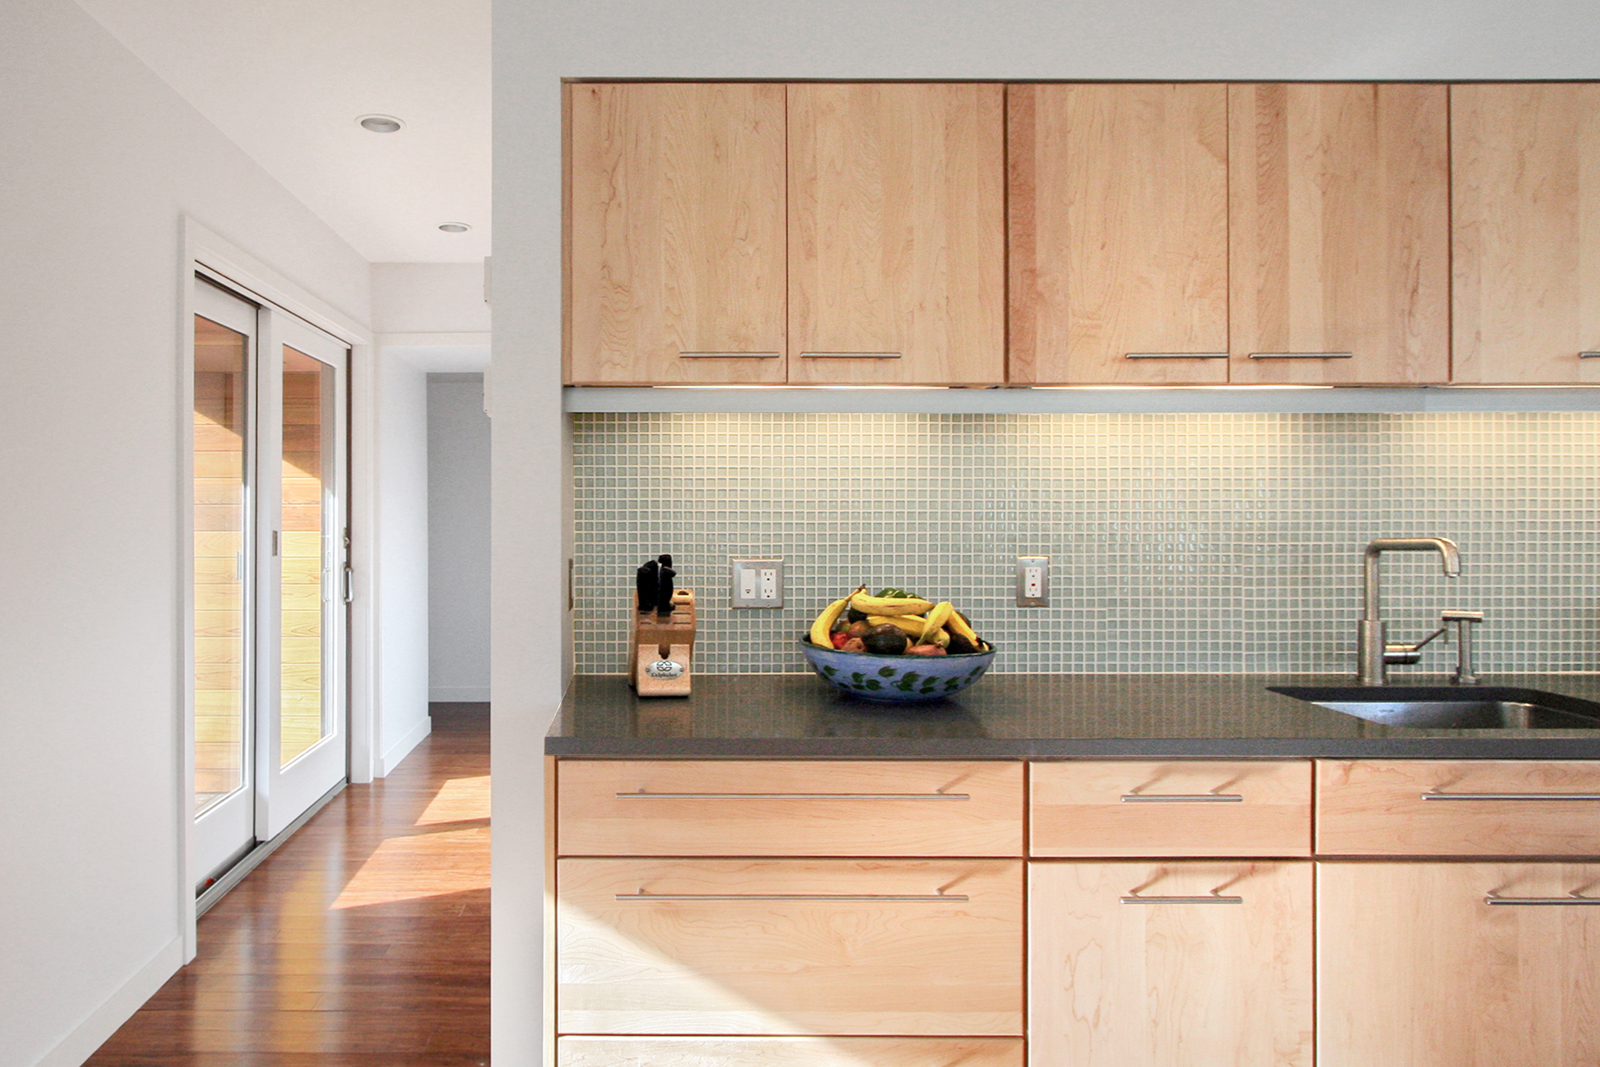 07-res4-resolution-4-architecture-modern-modular-home-prefab-house-vermont-cabin-interior-kitchen.jpg